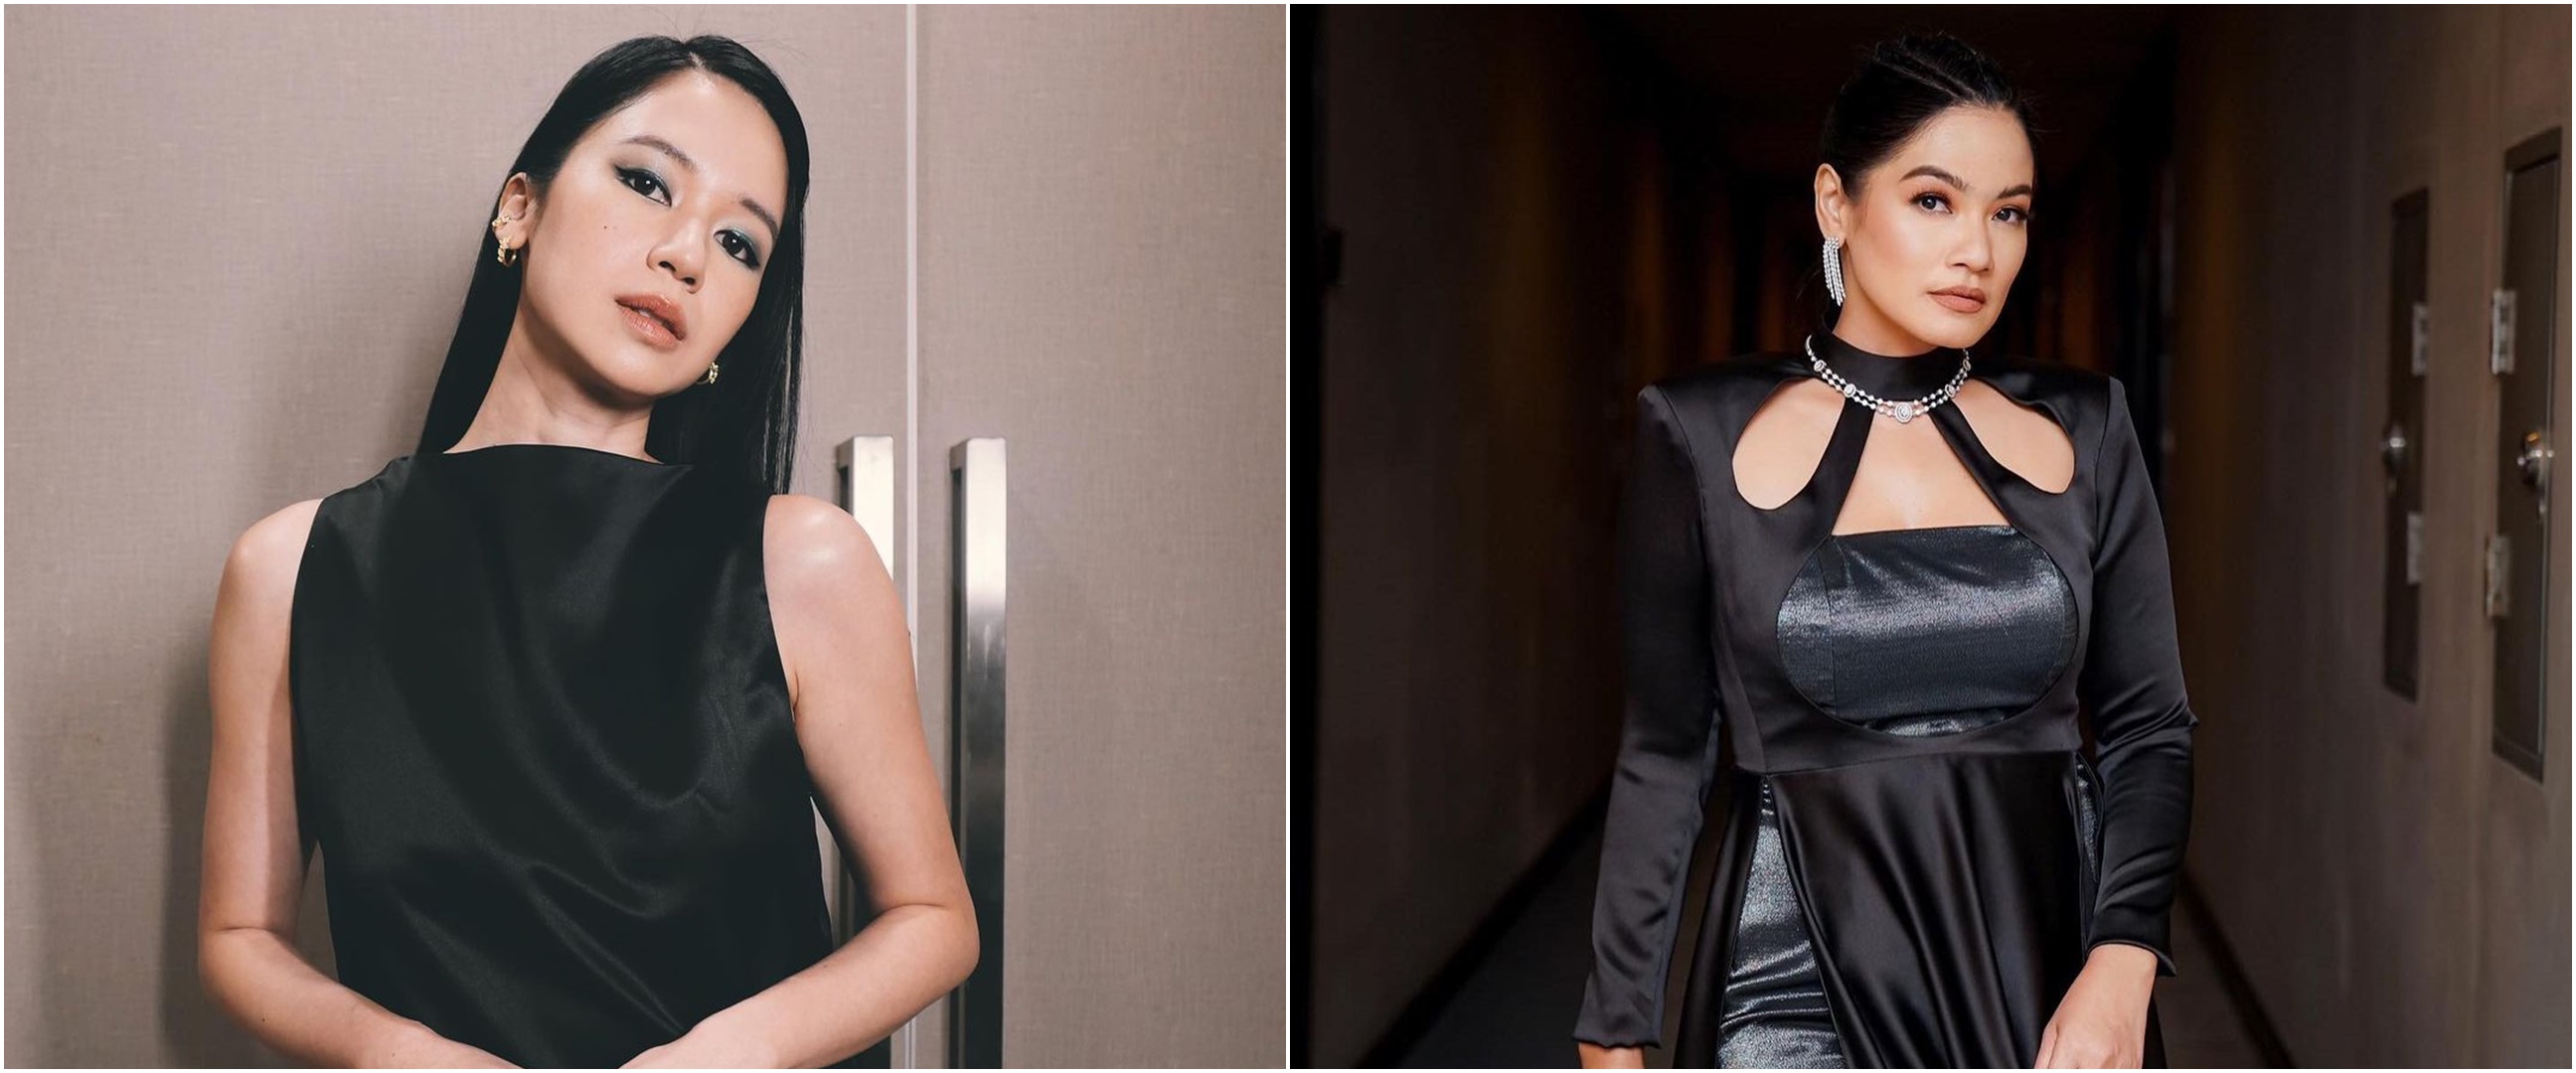 11 Gaya seleb di IMA Awards 2022, Titi Kamal pakai rok motif wayang